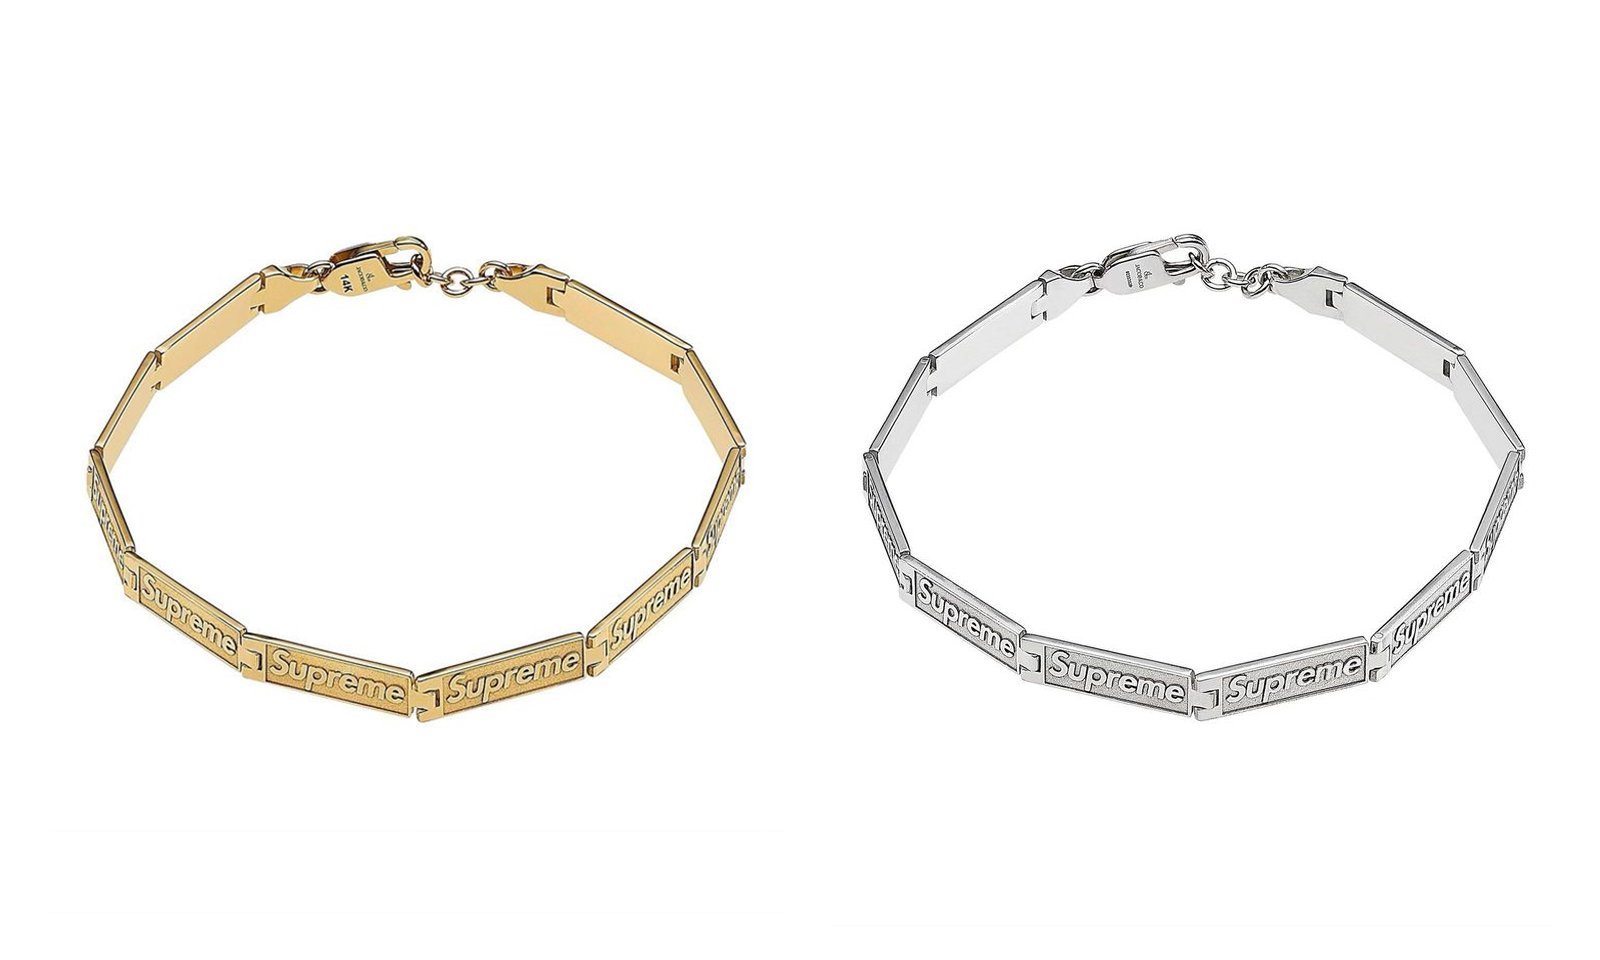 奢侈珠寶及腕錶品牌 JACOB & CO X SUPREME 推出聯名 14K 金 & 純銀 BOX LOGO 手鍊